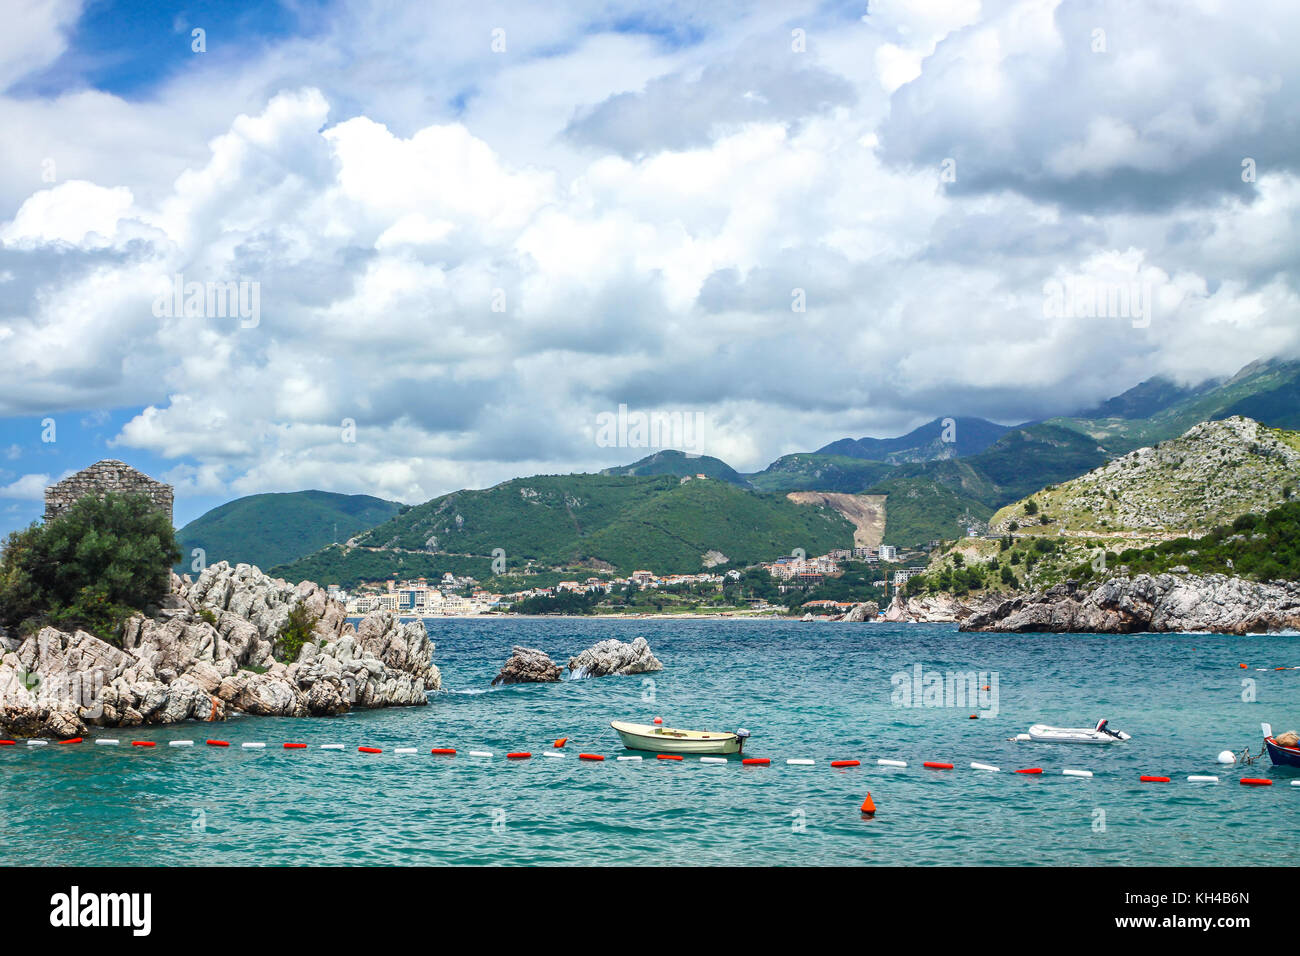 Picturesque summer view of Adriatic seacoast in Budva Riviera. Przno beach, Milocer, Montenegro Stock Photo